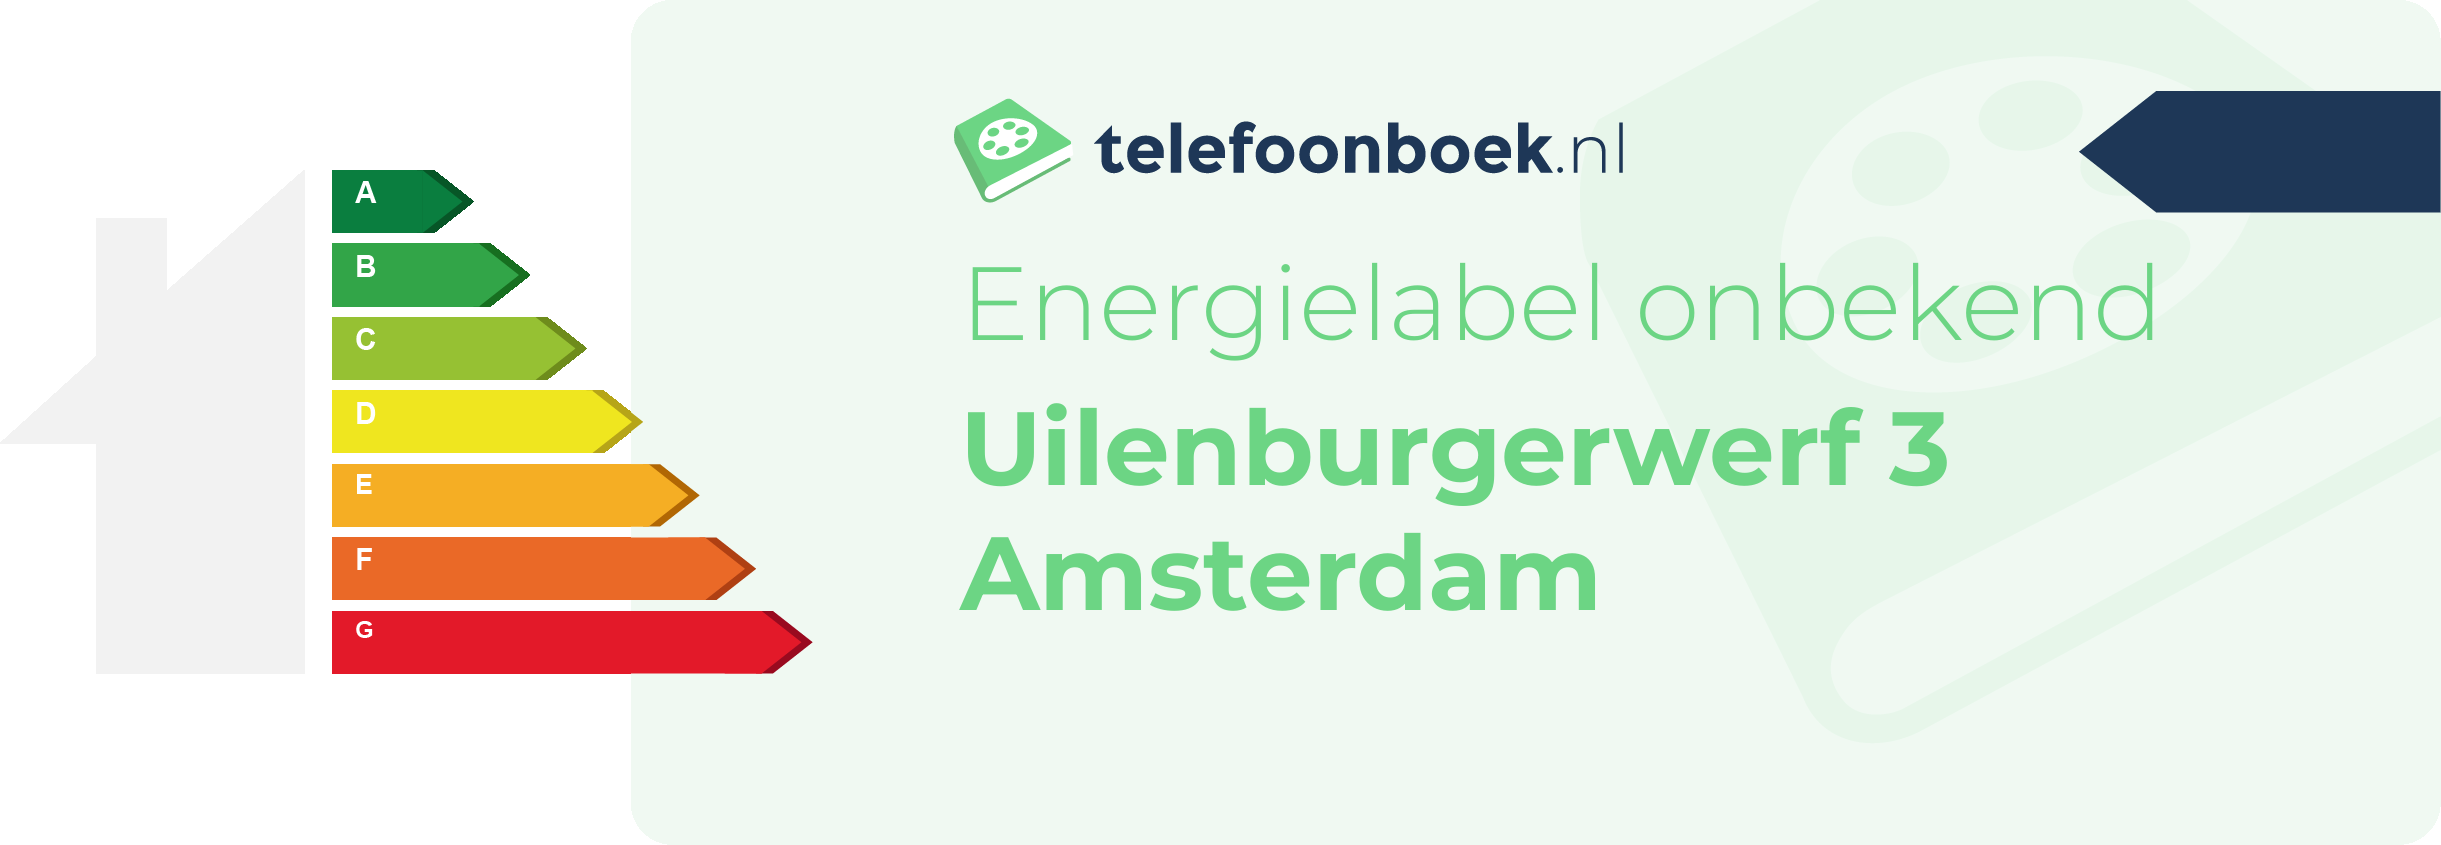 Energielabel Uilenburgerwerf 3 Amsterdam